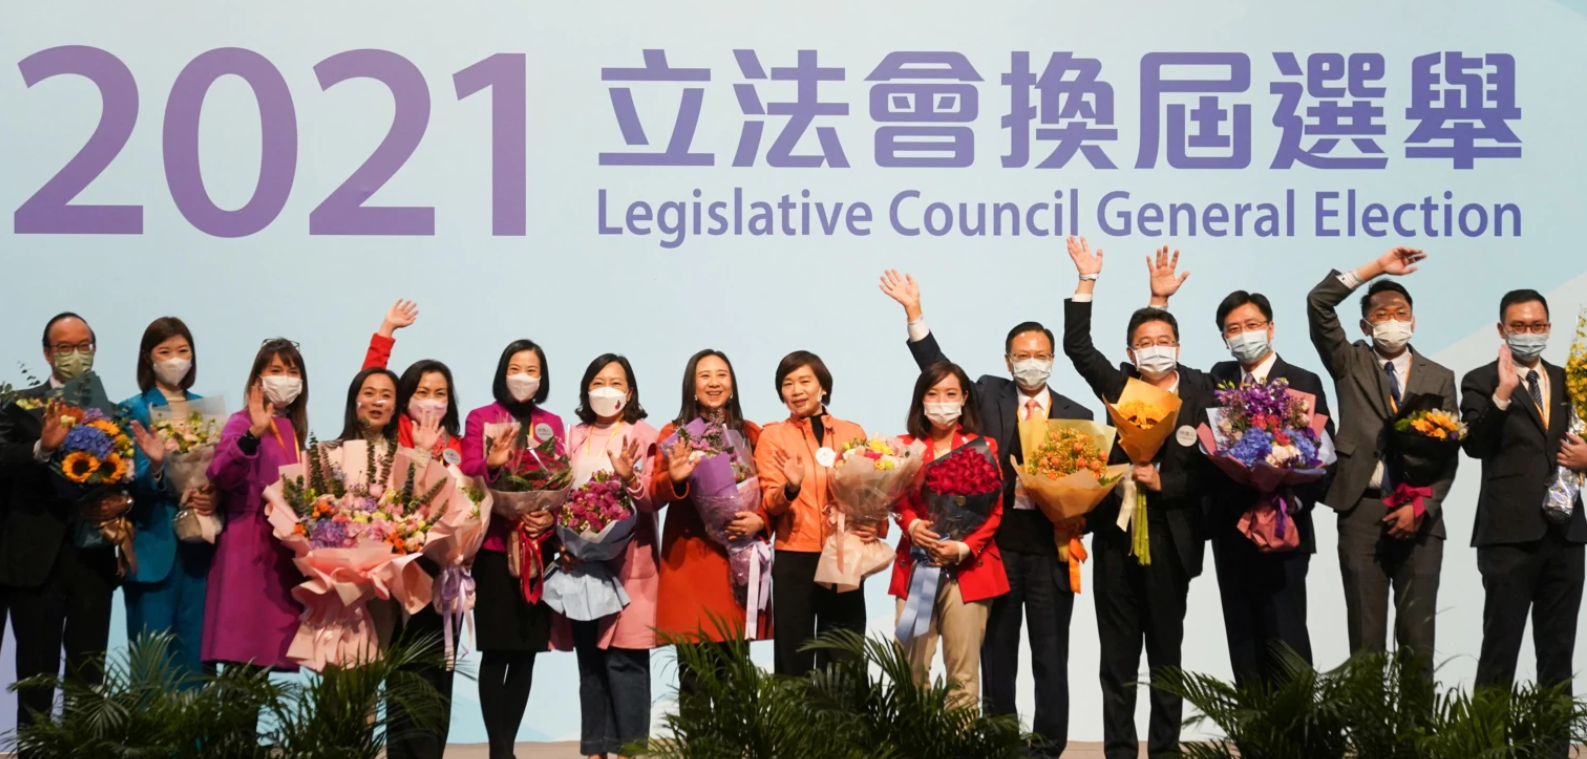 홍콩 입법회 선거에 출마했던 친중파 당선인들이 20일 자축 행사를 가졌다.